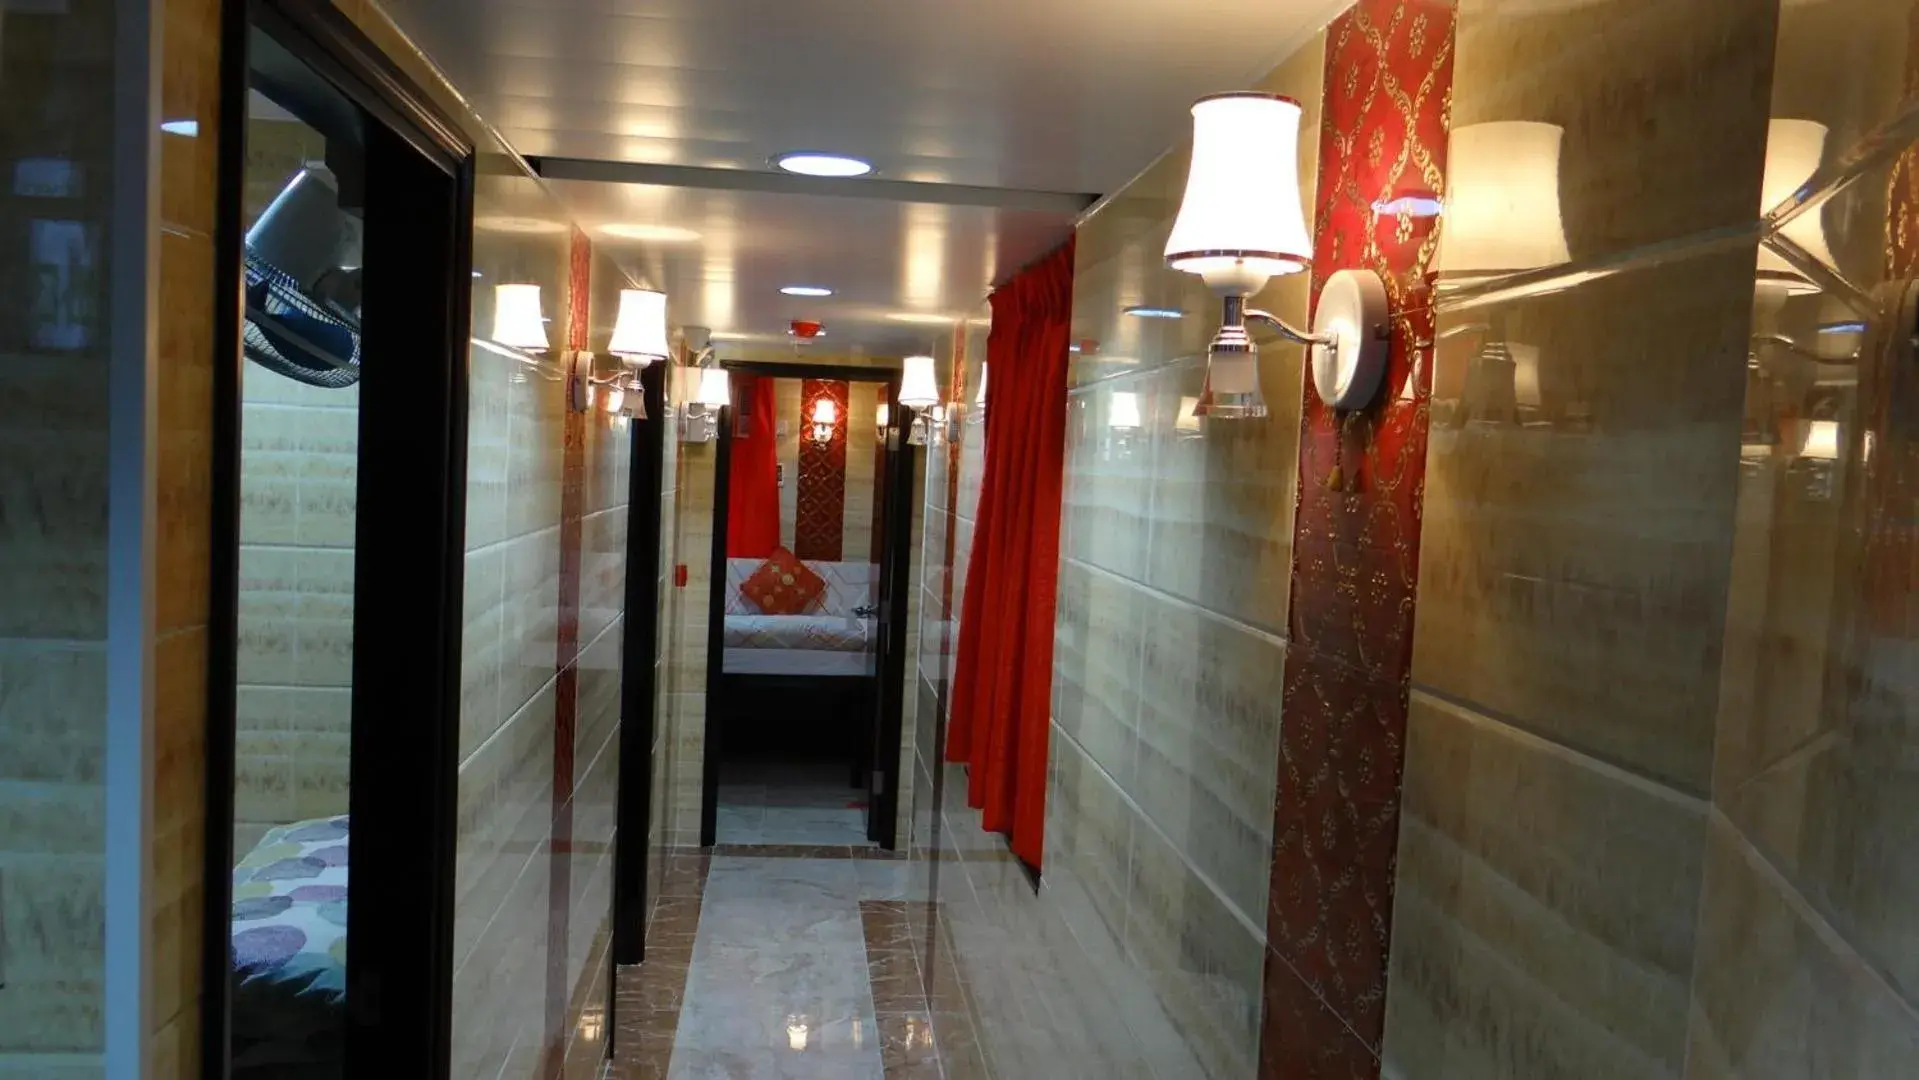 Decorative detail, Bathroom in Philippine Hostel